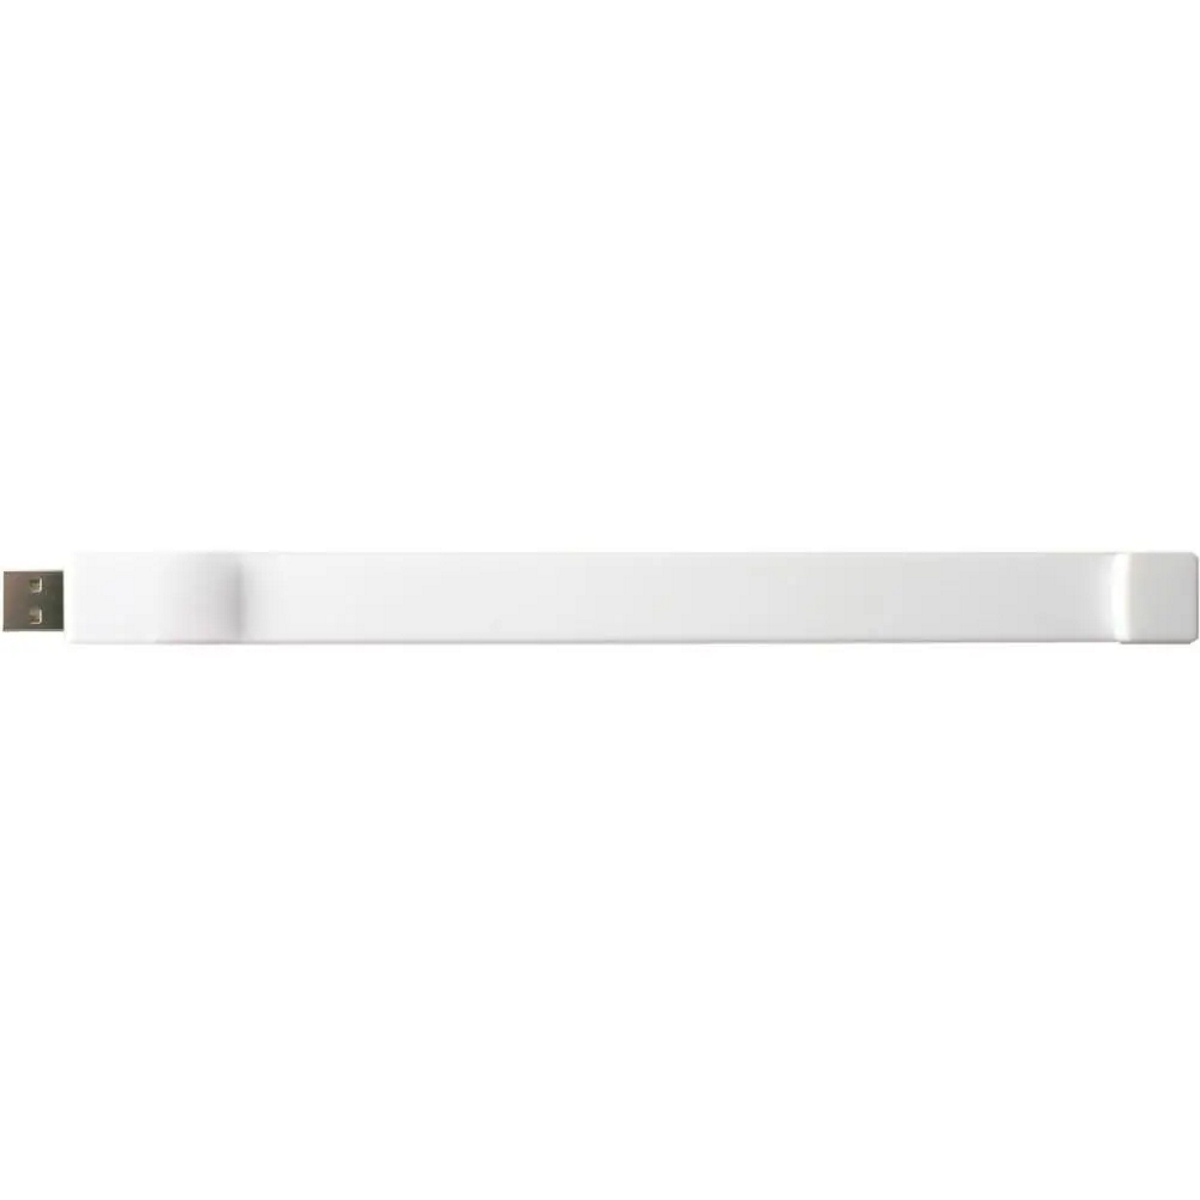 USB GERMANY Silicon-Armband GB) 8 USB-Stick (Weiß